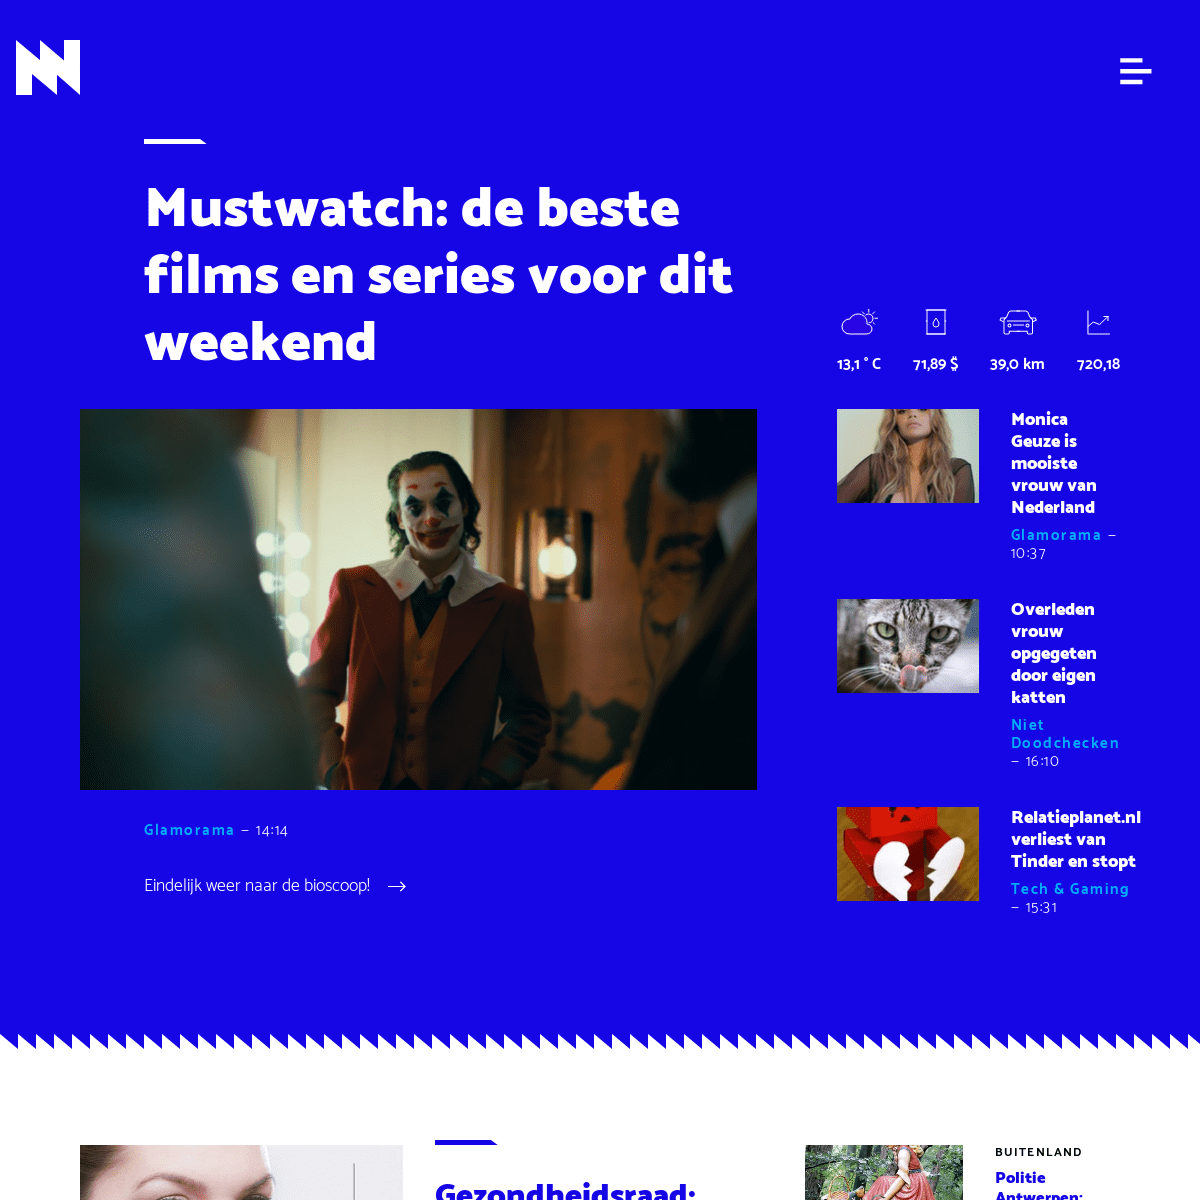 A complete backup of https://nieuwnieuws.nl